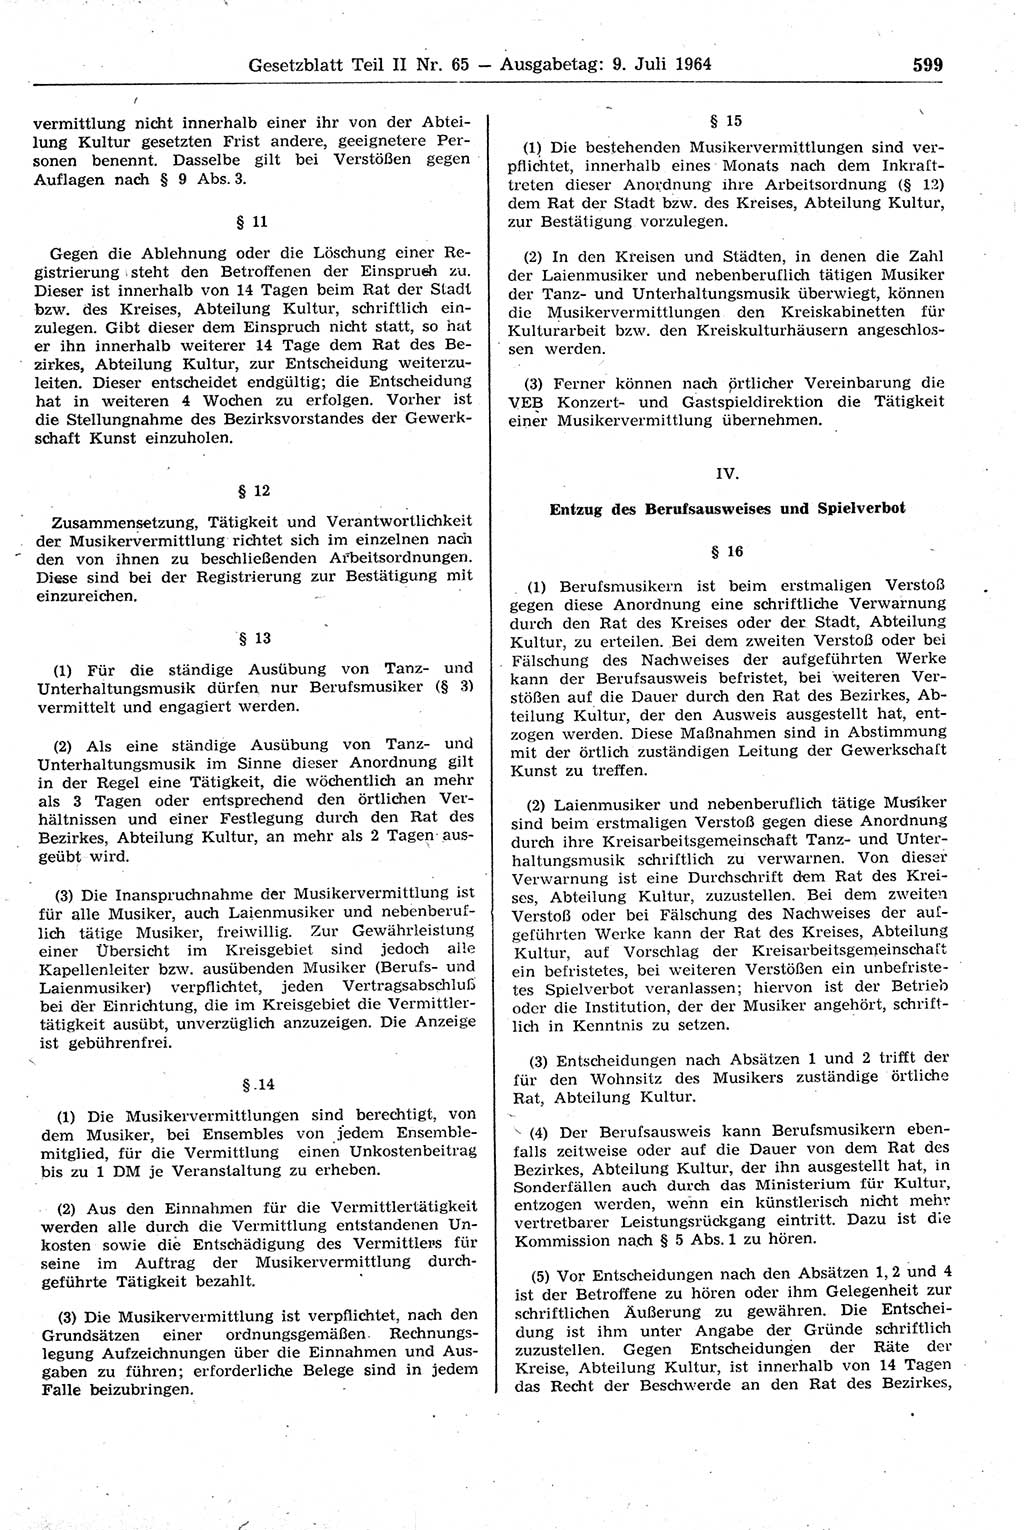 Gesetzblatt (GBl.) der Deutschen Demokratischen Republik (DDR) Teil ⅠⅠ 1964, Seite 599 (GBl. DDR ⅠⅠ 1964, S. 599)